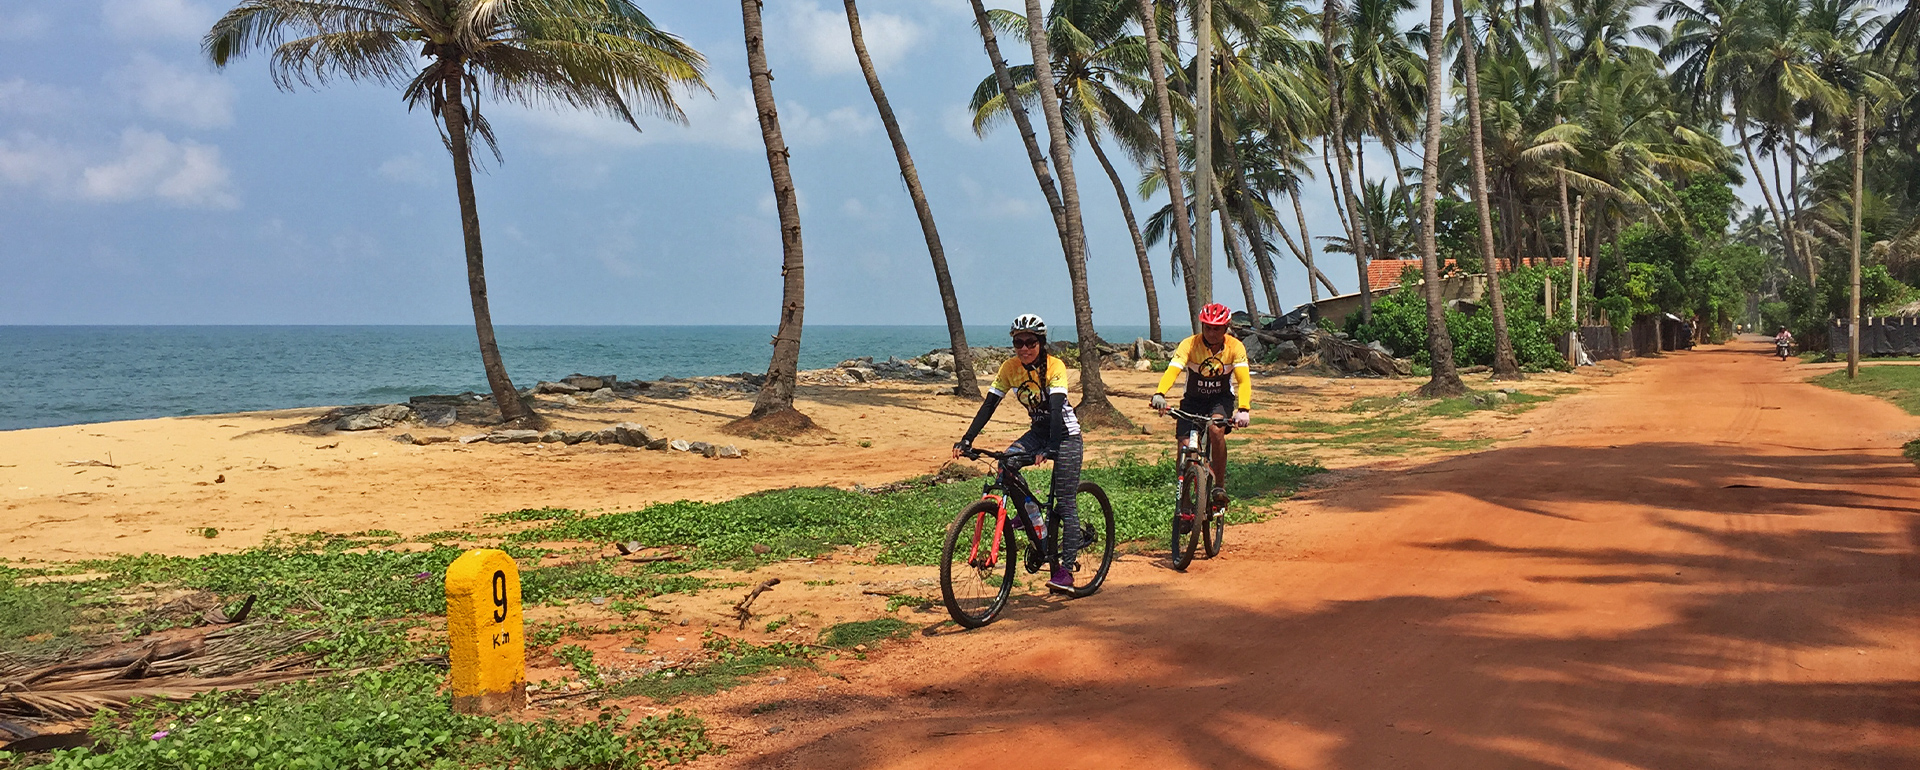 Bikereise Sri Lanka